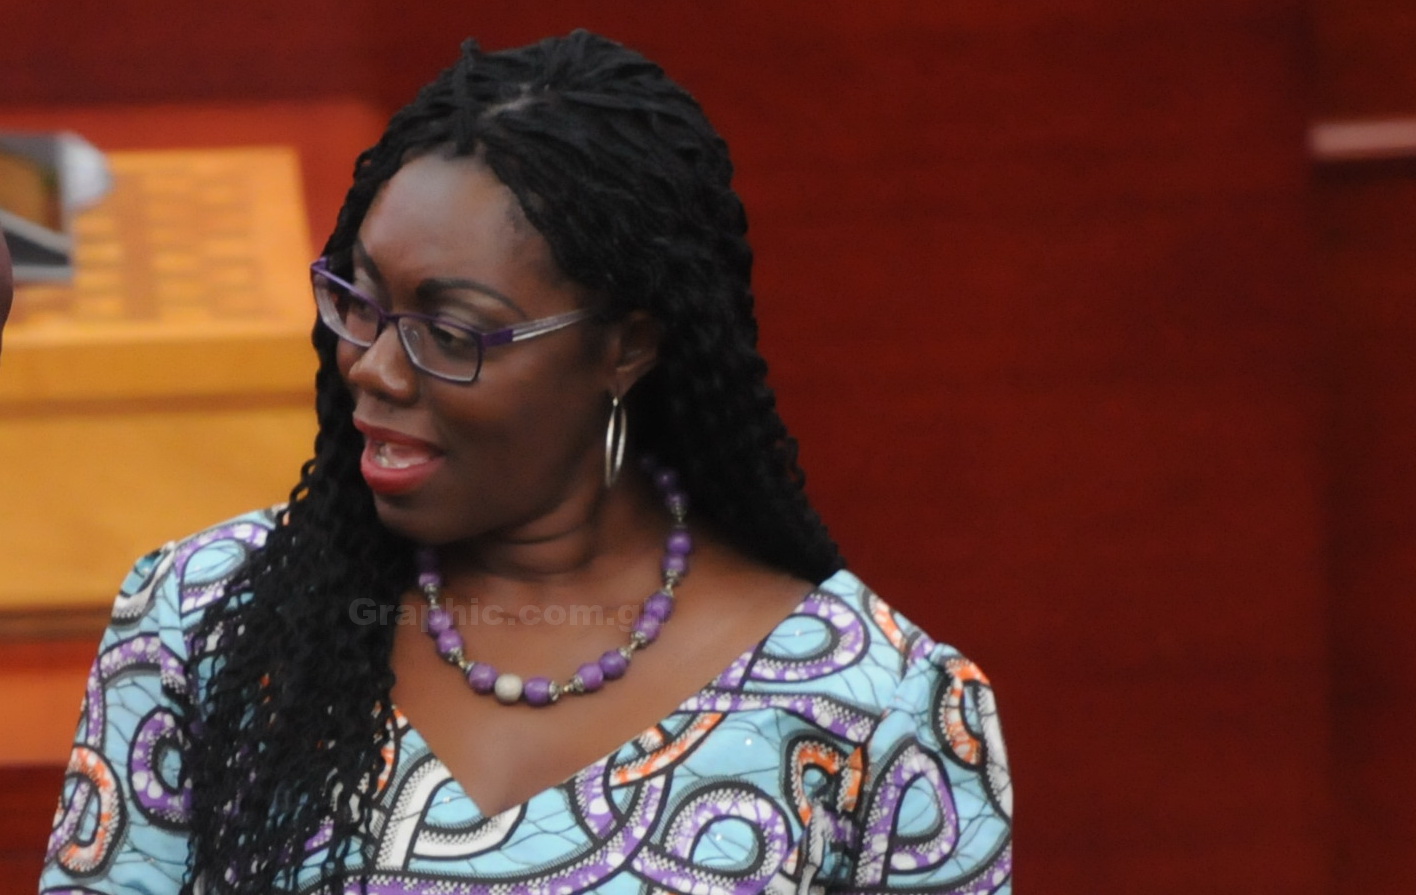 Minister of Communications, Mrs Ursula Owusu-Ekuful